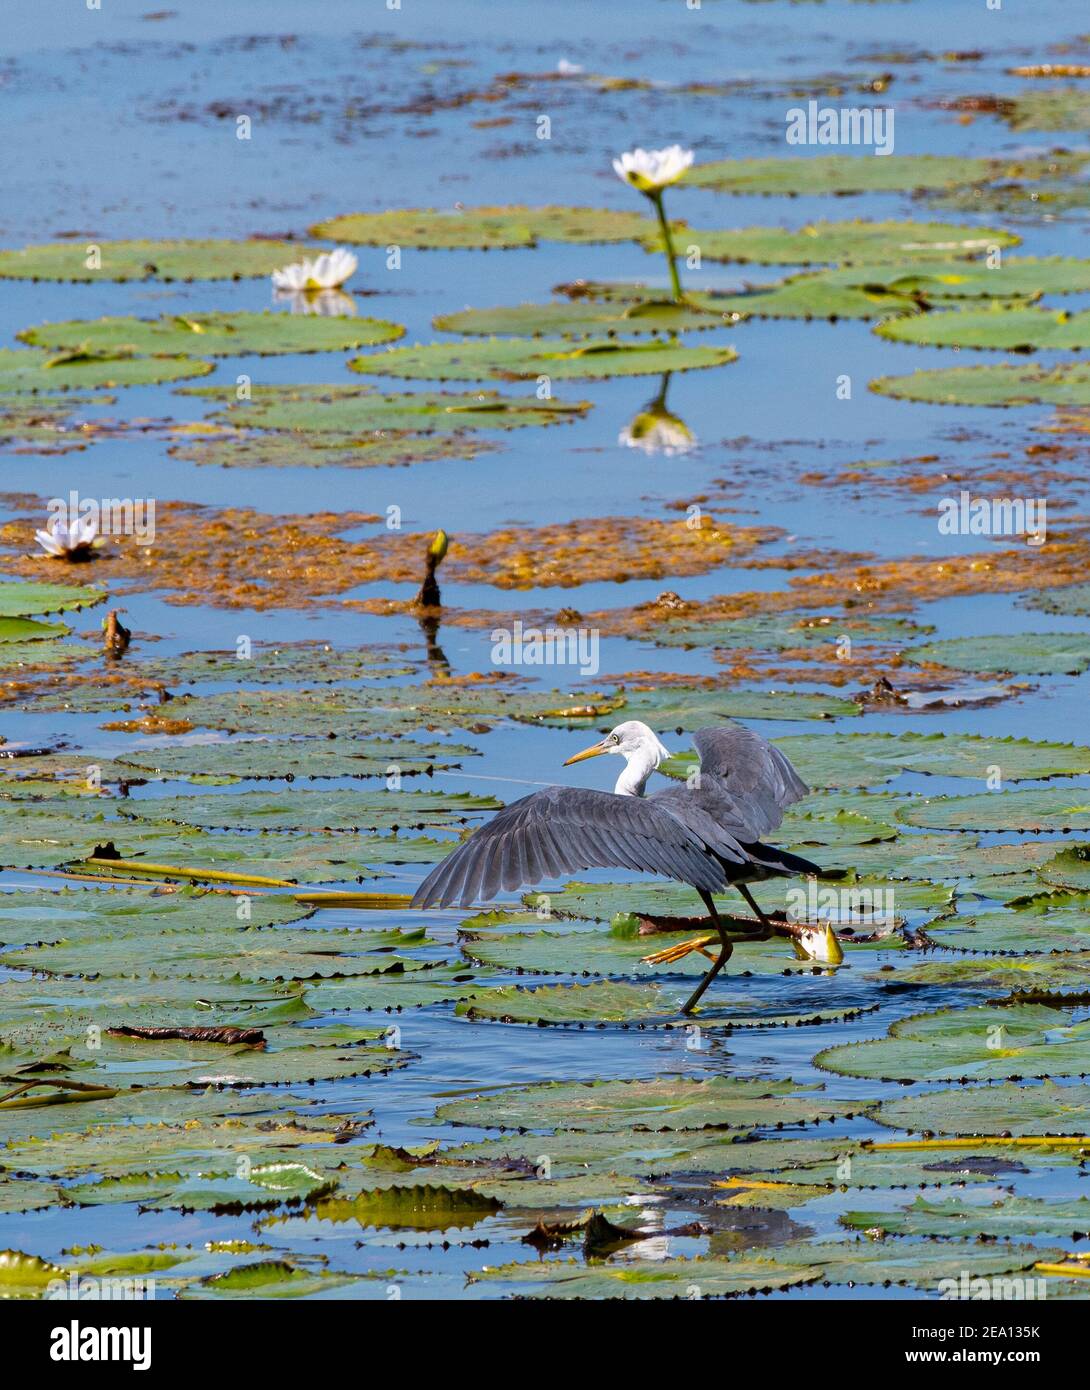 Heron à pied immature (Ardea picata) débarquant avec des ailes ouvertes sur des coussins de nénuphars dans une zone humide, barrage de Fogg, territoire du Nord, territoire du Nord, Australie Banque D'Images